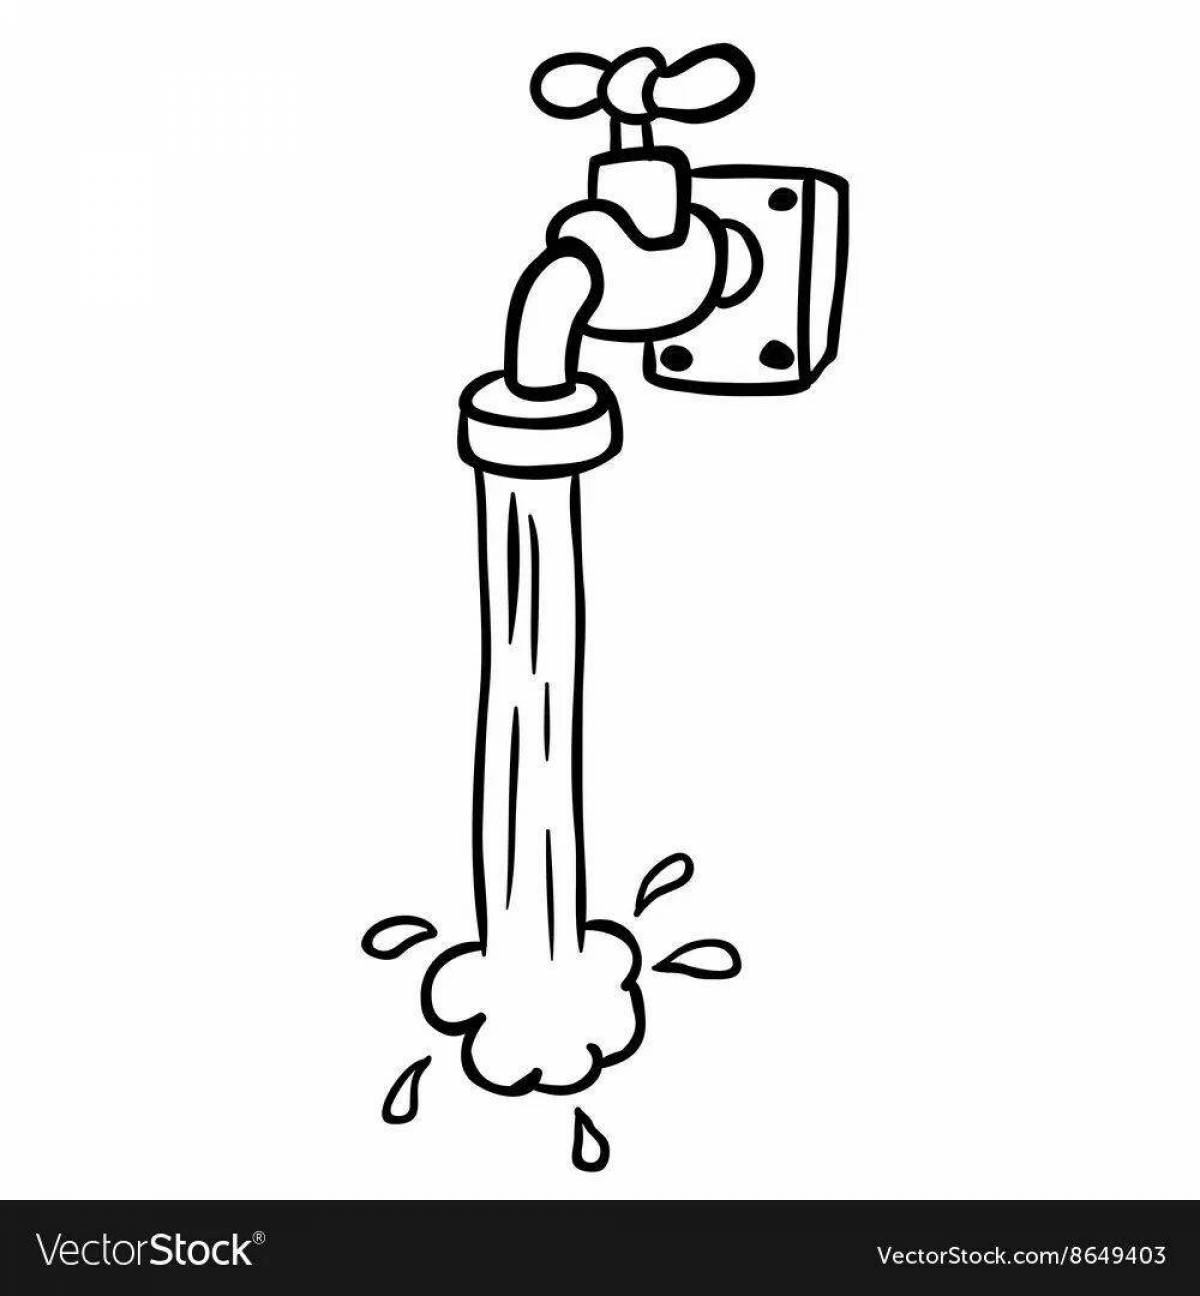 Children's water faucet #9